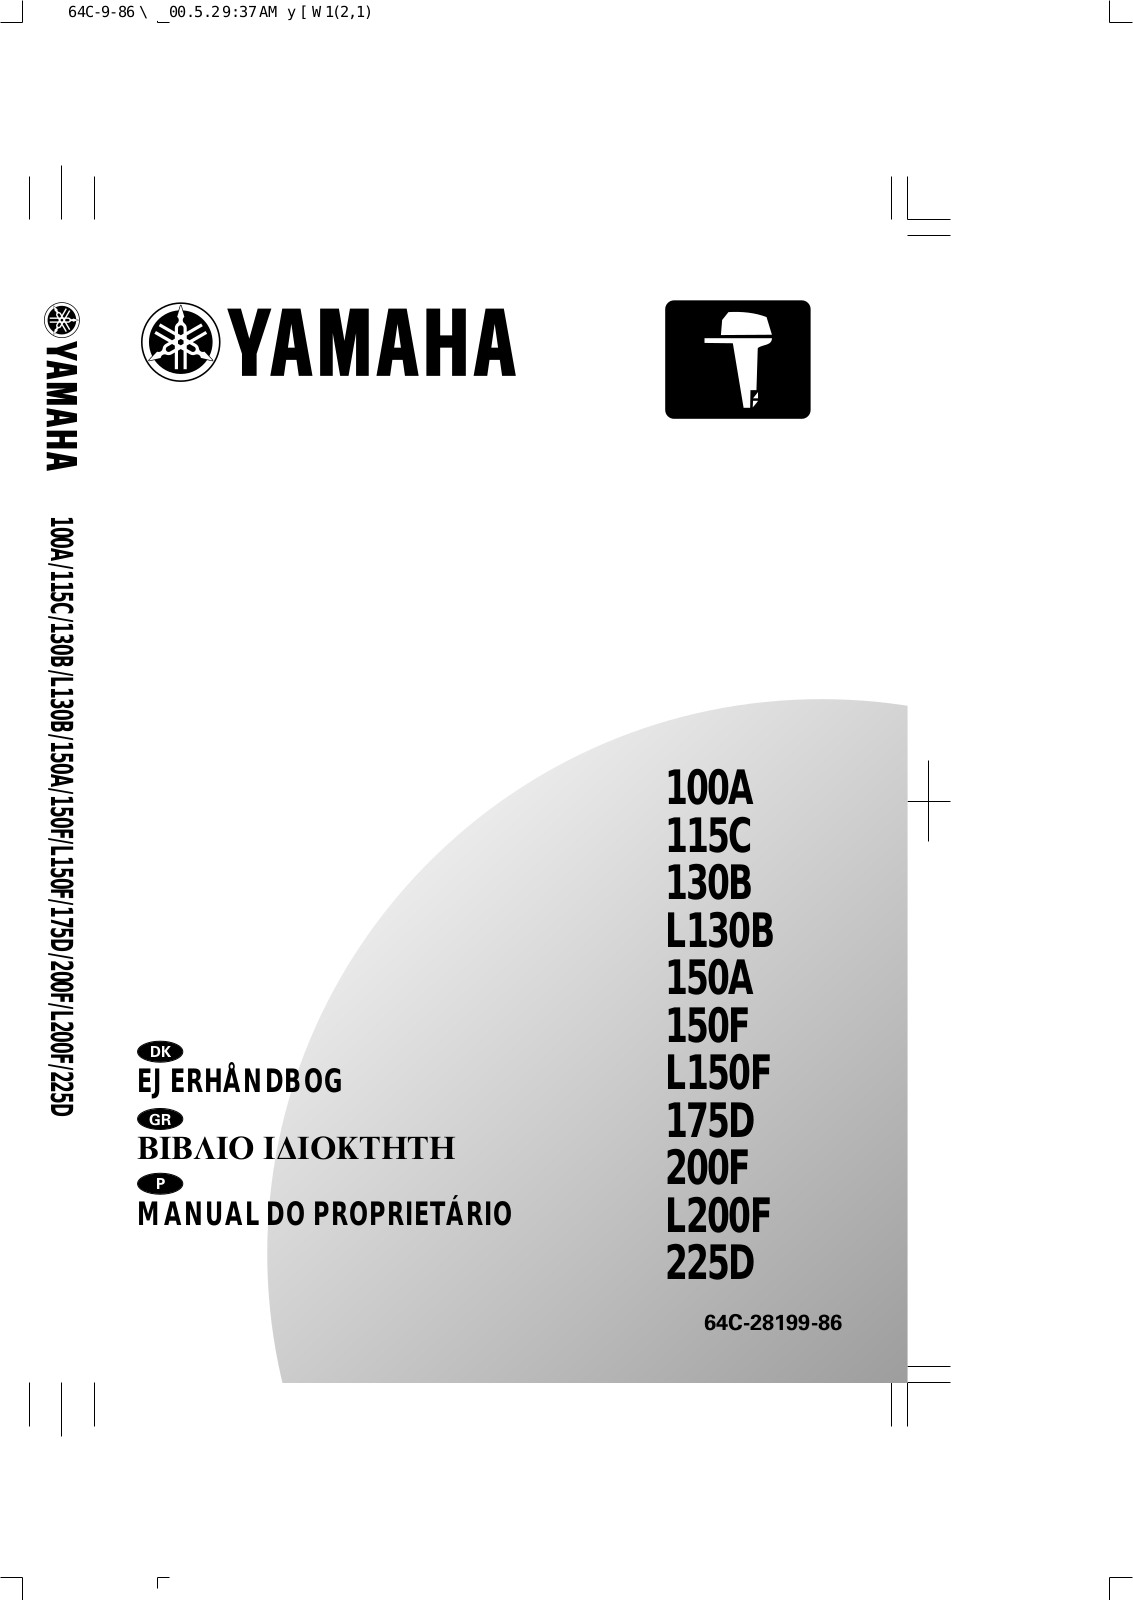 Yamaha 100A, 115C, 130B, L130B, 150A User Manual